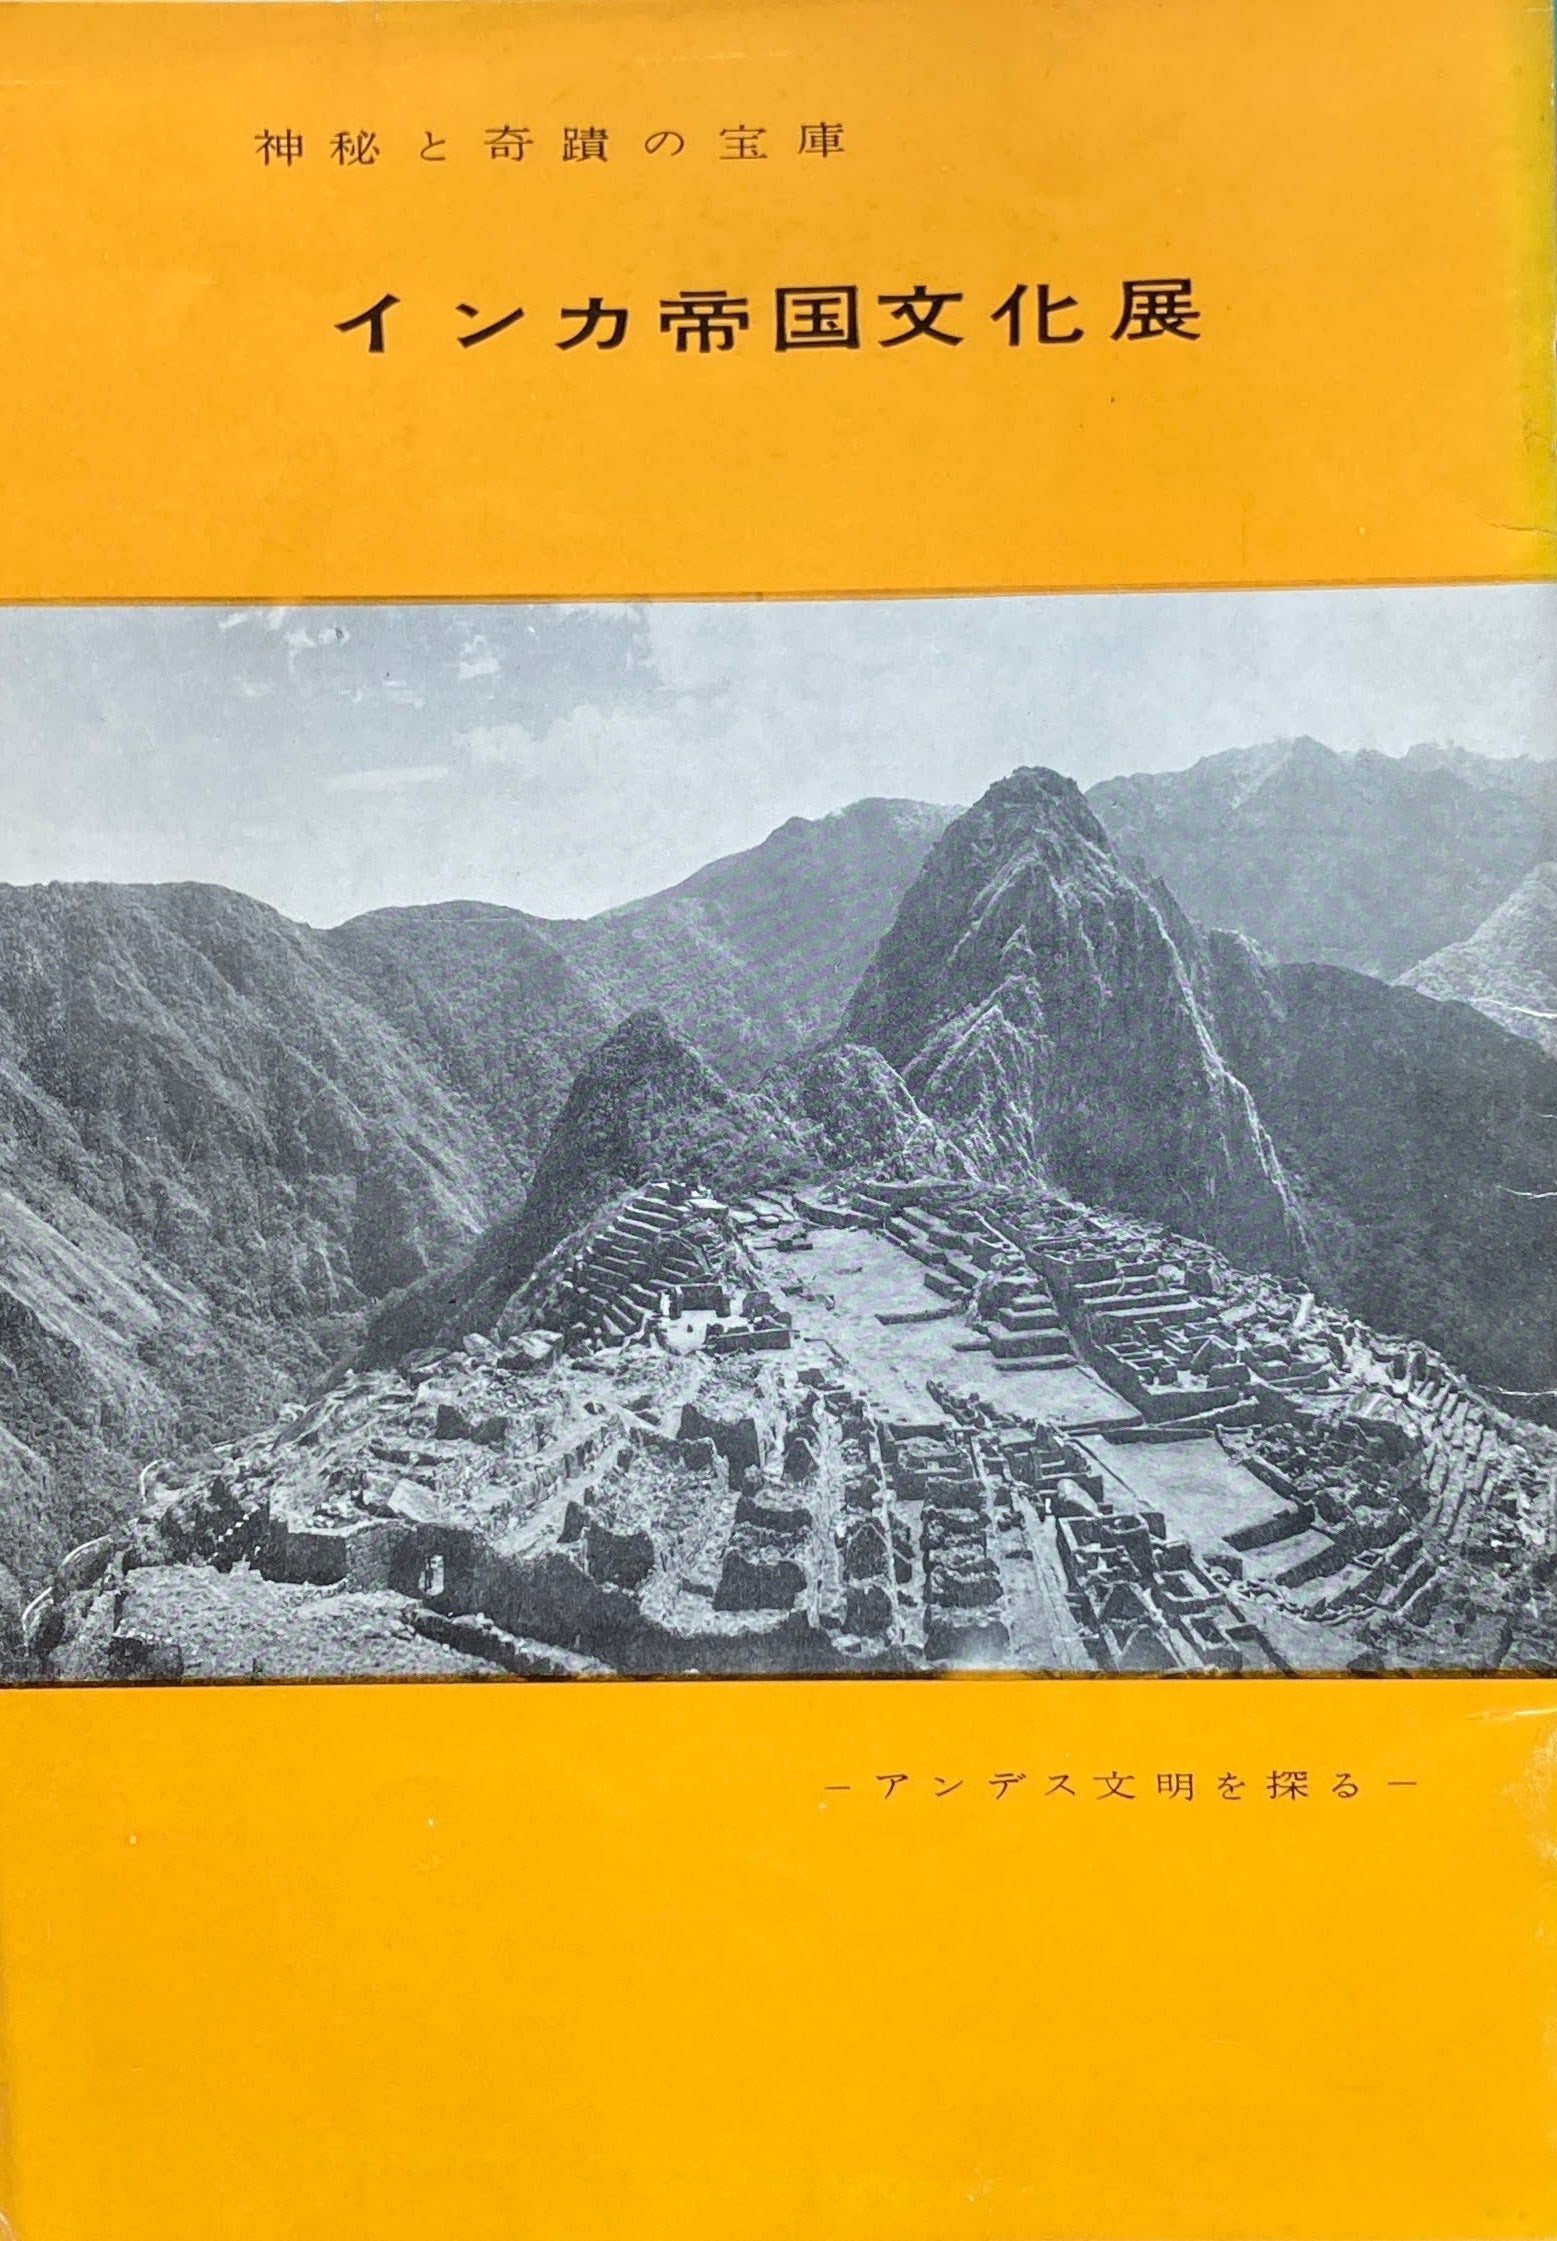 インカ帝国文化展 神秘と奇蹟の宝庫 アンデス文明を探る 1958年